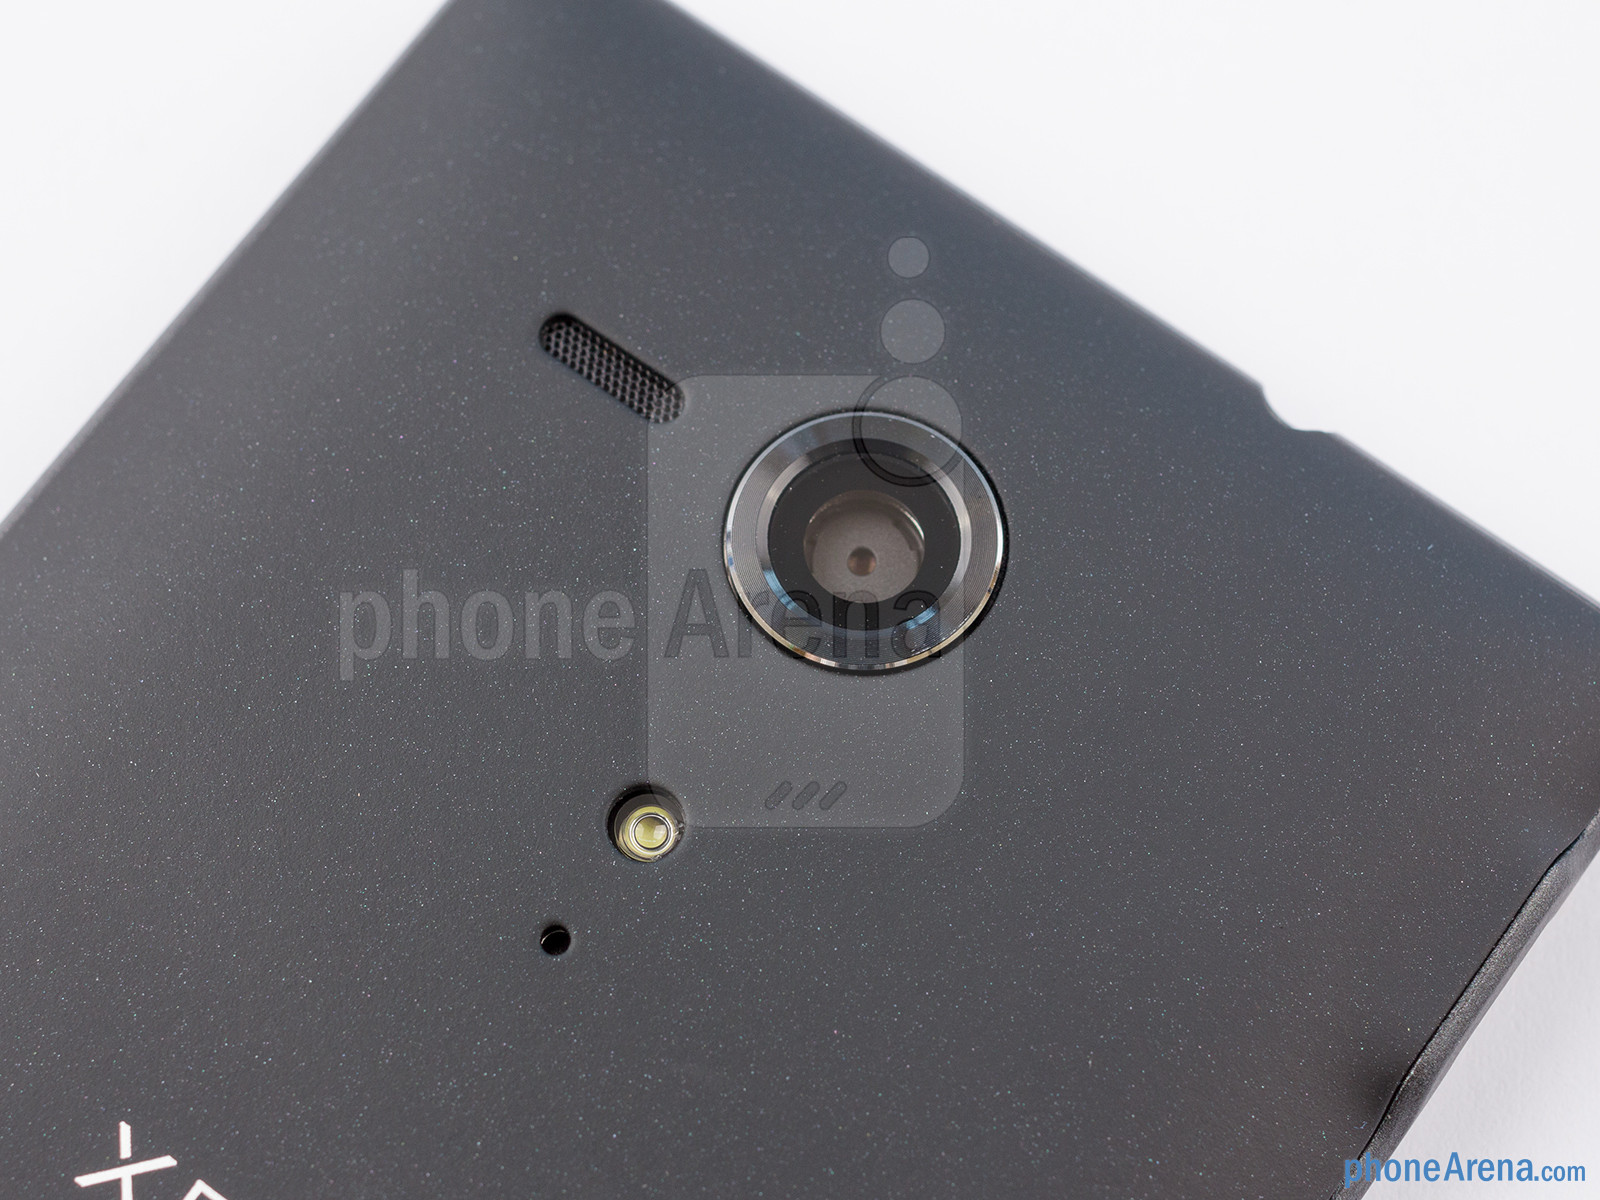 Sony Xperia SP: Cấu hình "ngon", thiết kế chắc chắn nhưng camera chưa tốt 11